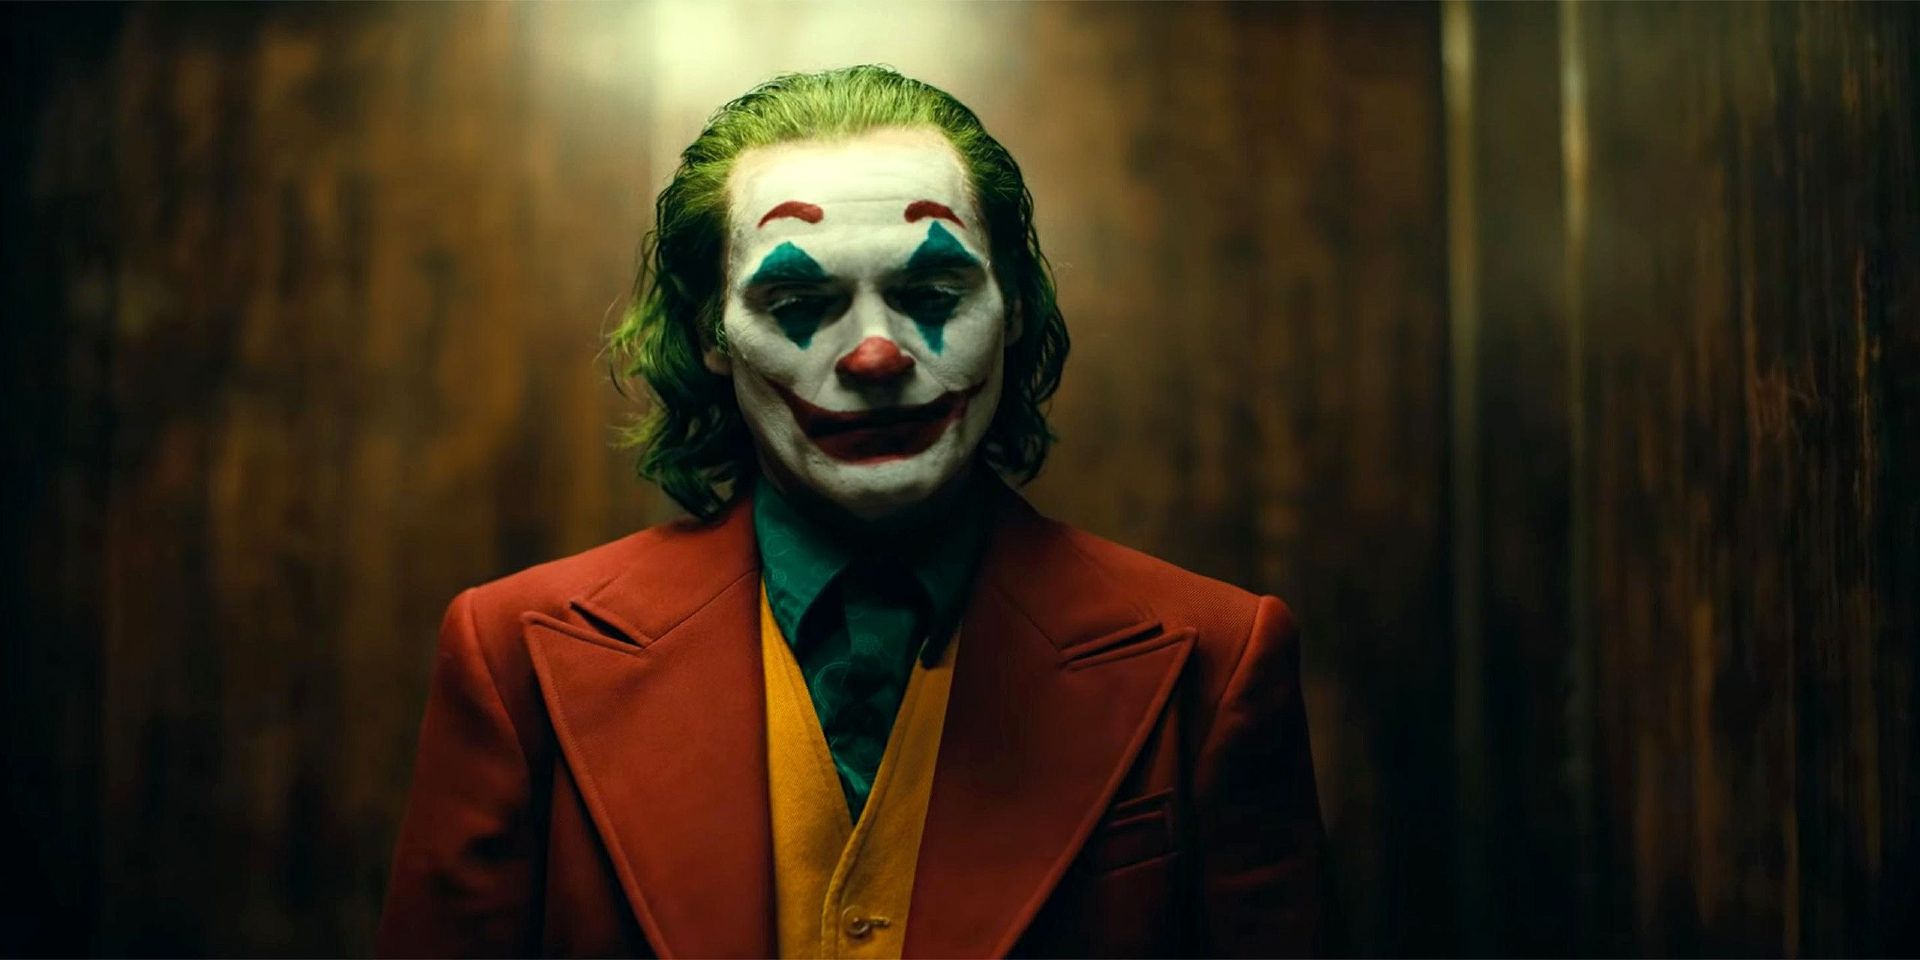 The antihero Arthur Fleck in 2019's Joker.